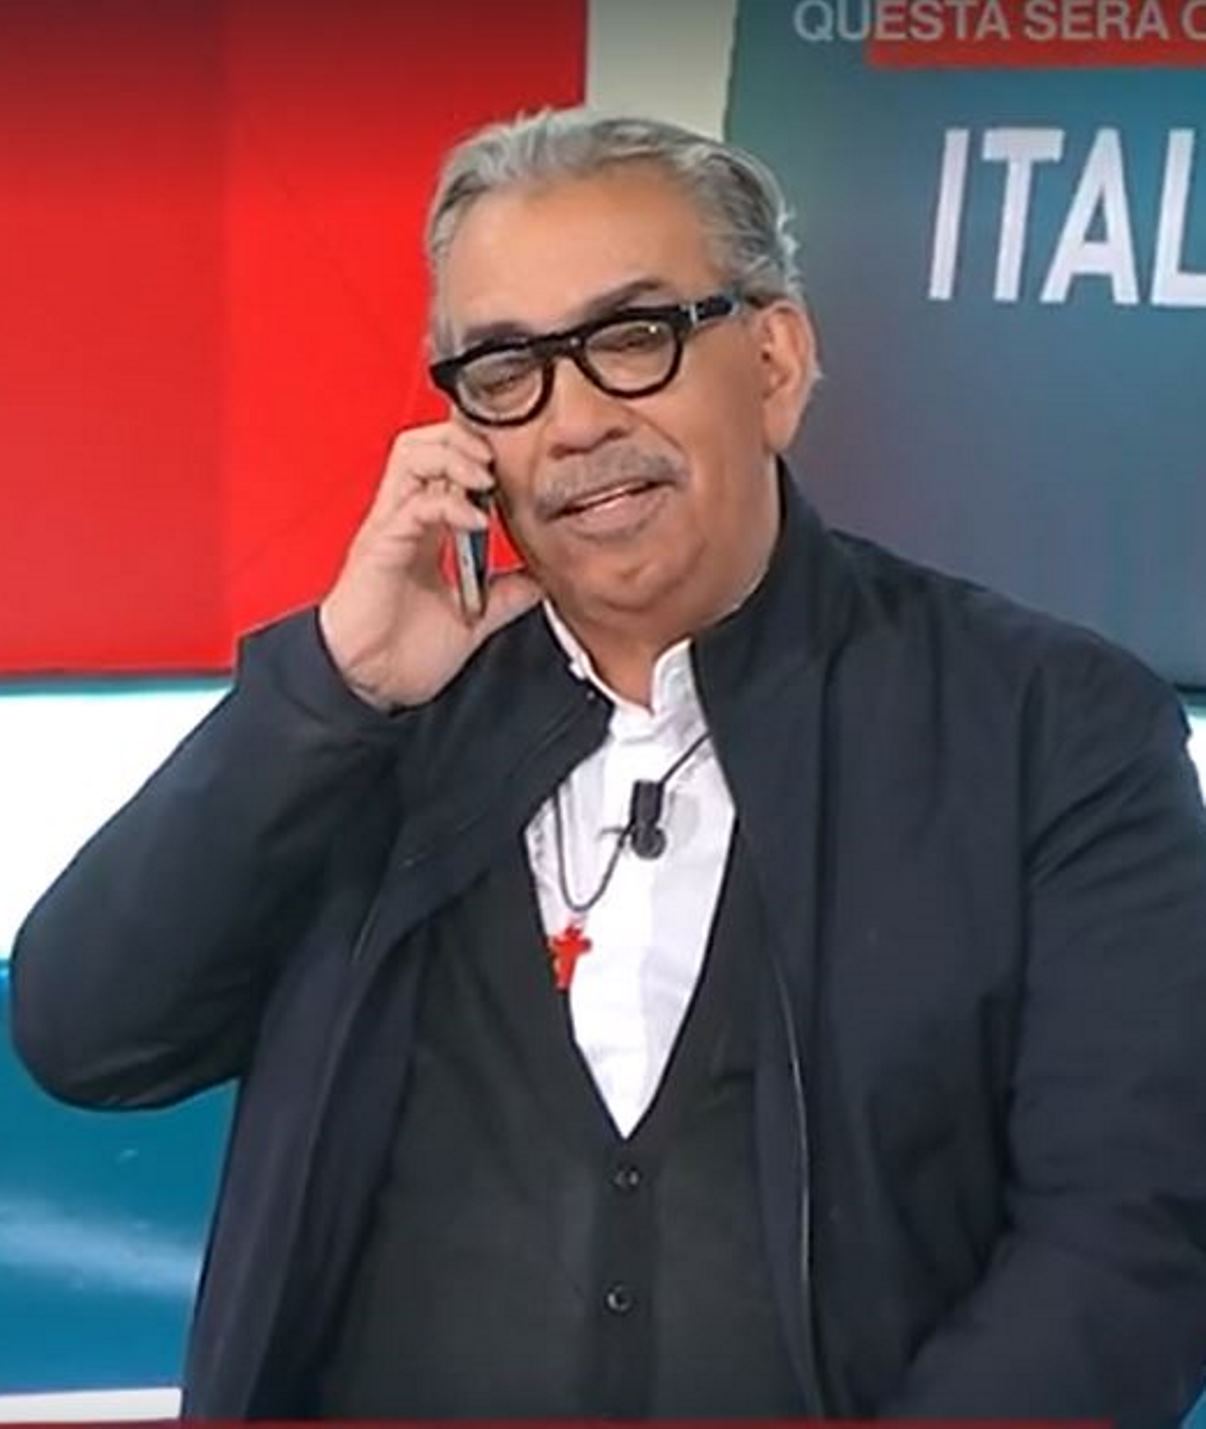 Guillermo Mariotto gaffe a Storie Italiane squilla il telefono